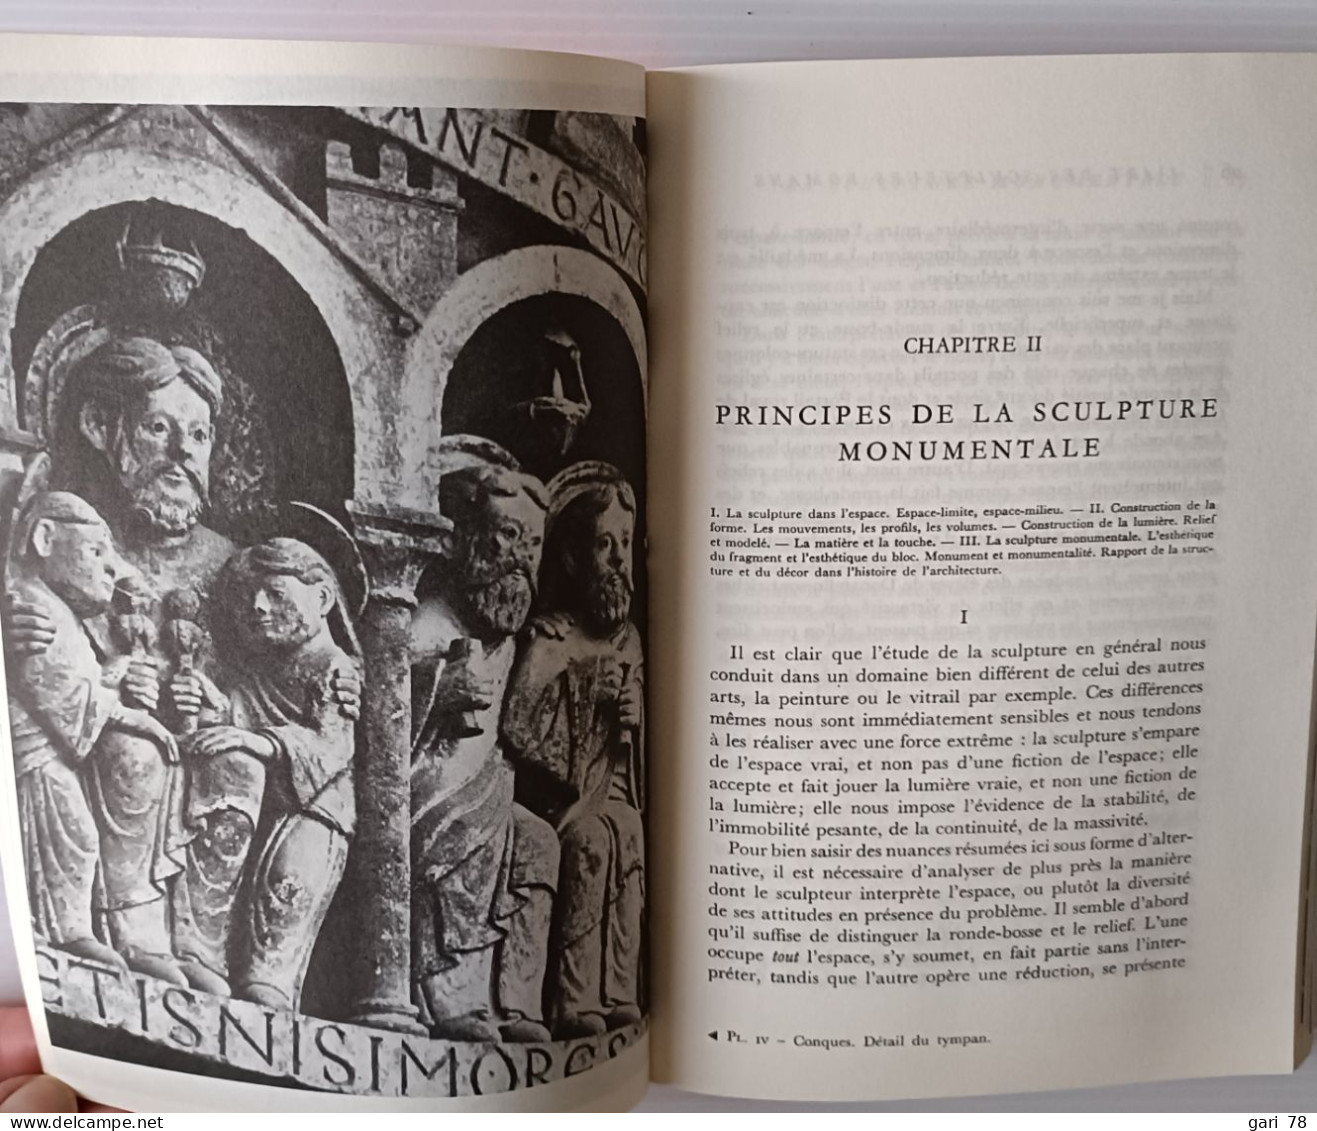 Henri FOCILLON : L'art Des Sculpteurs Romans (résumé Dans Descriptif) - Art